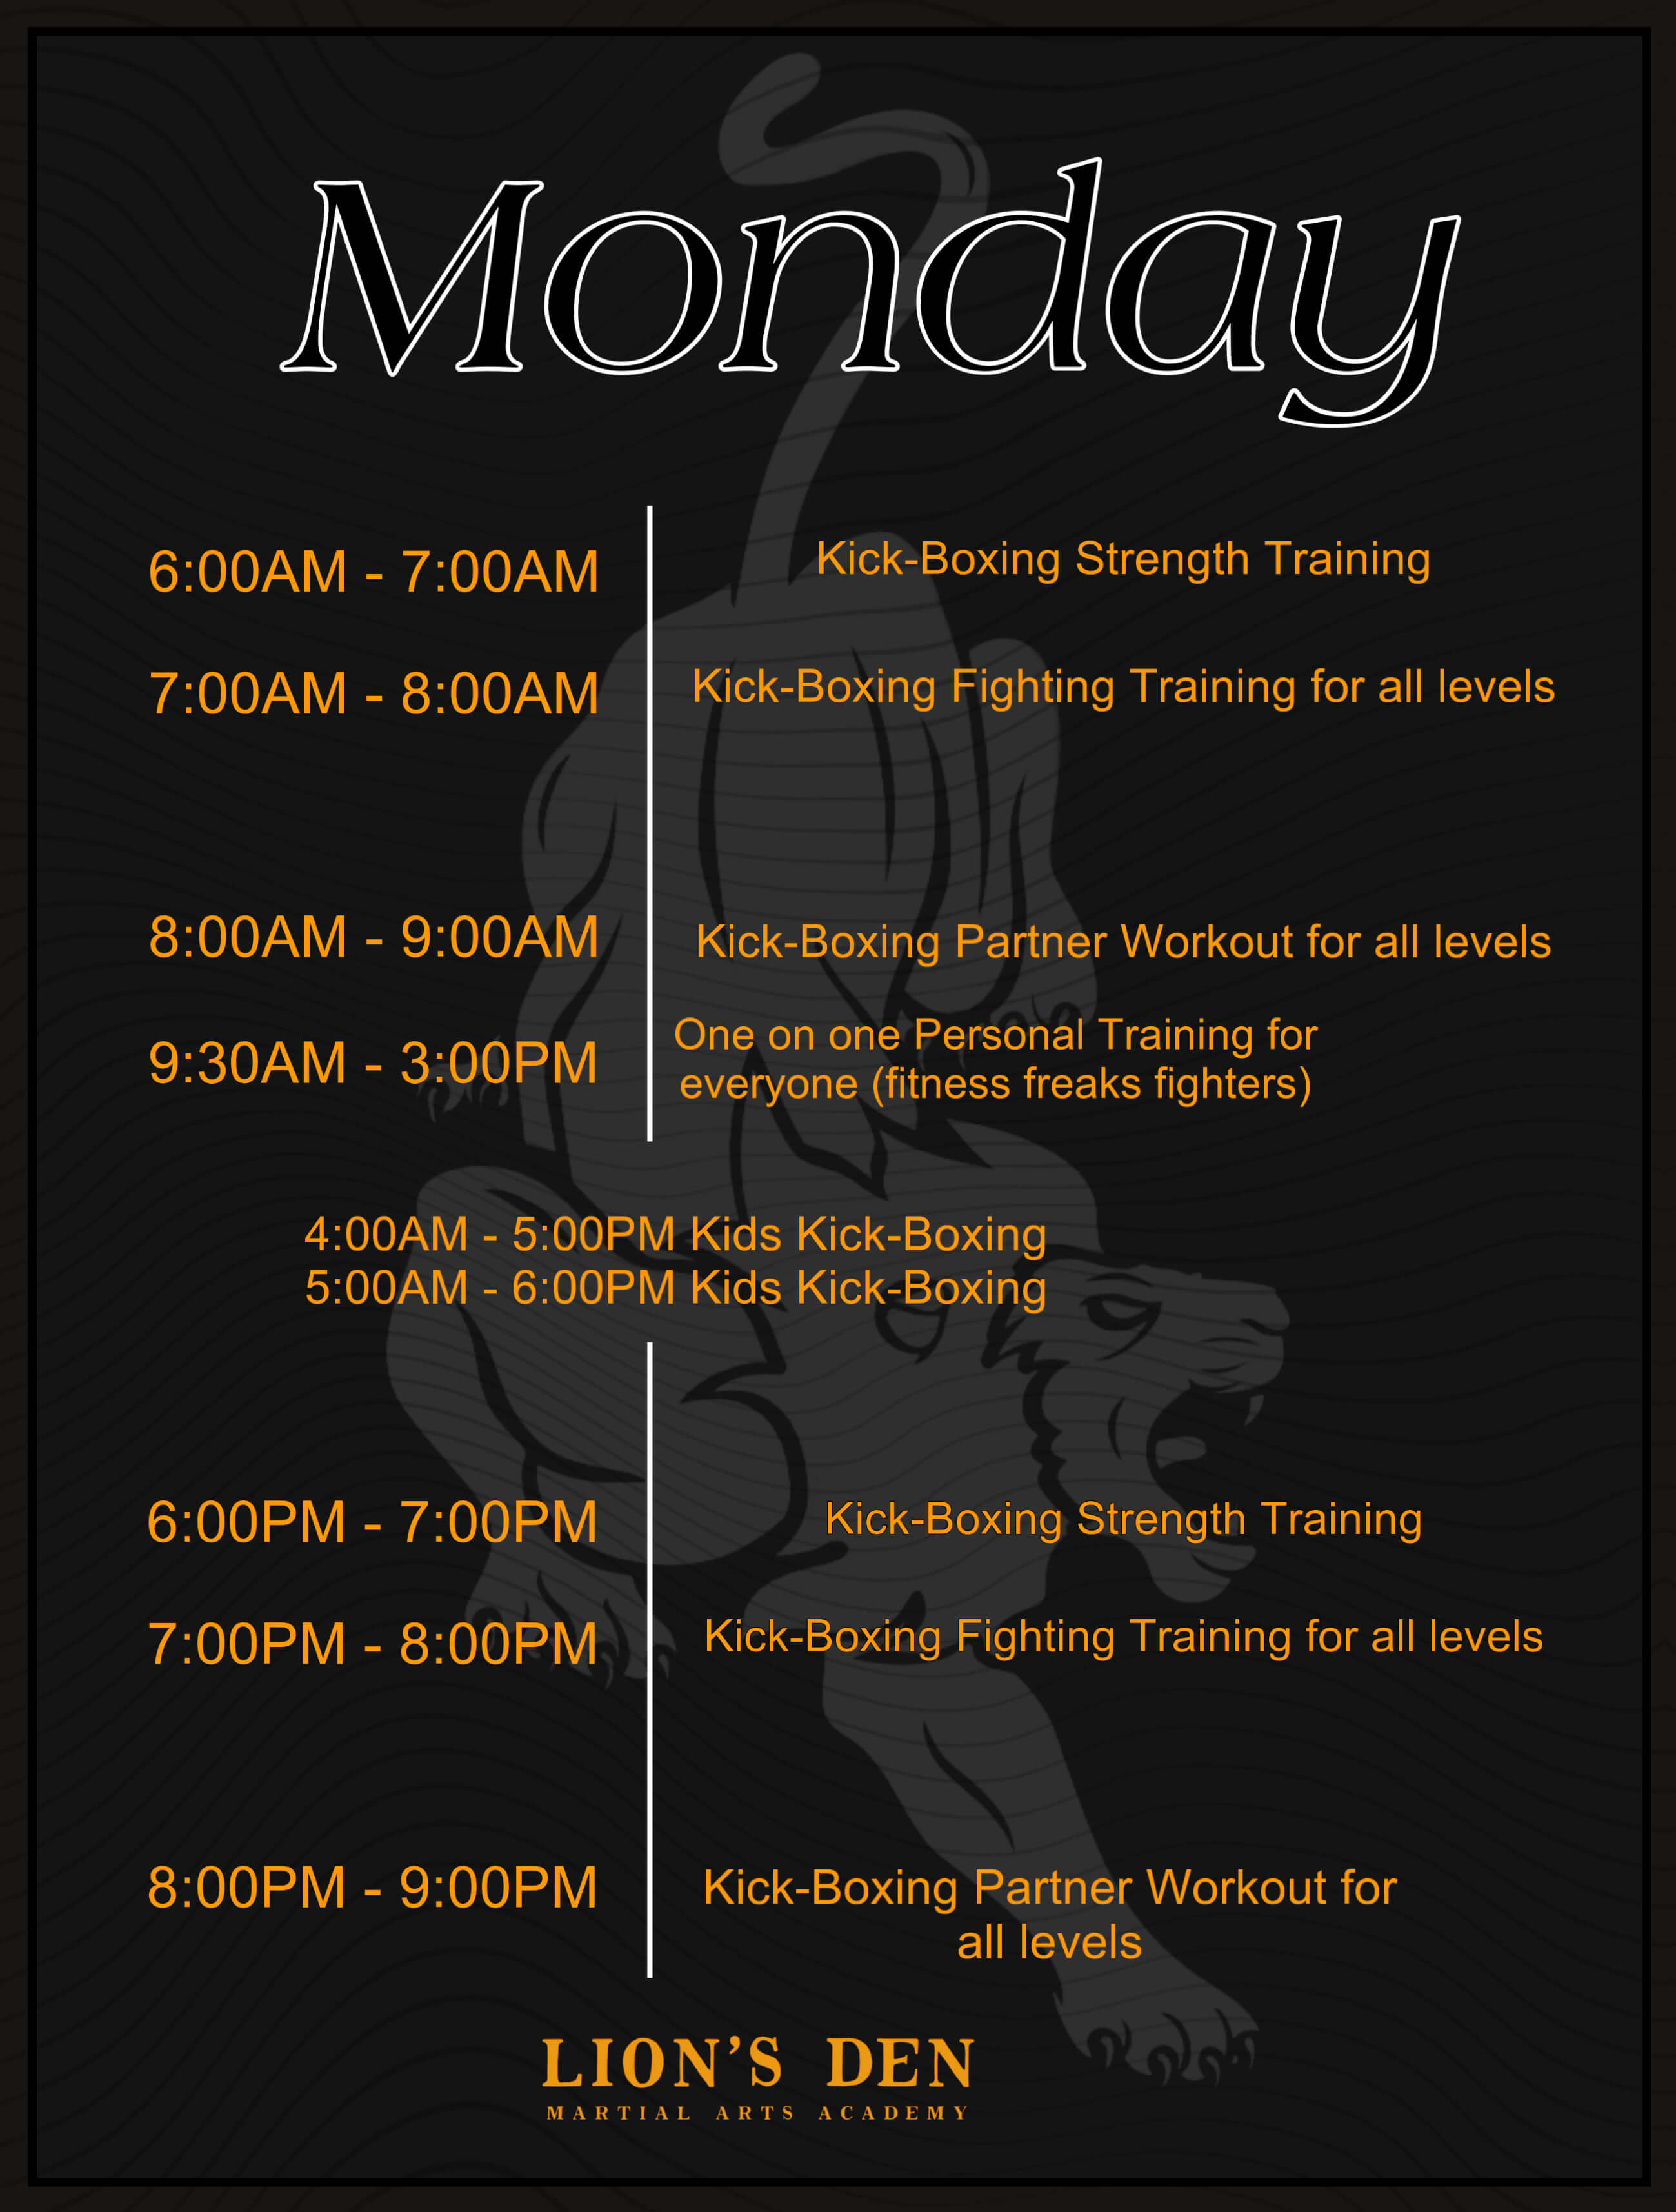 training schedule